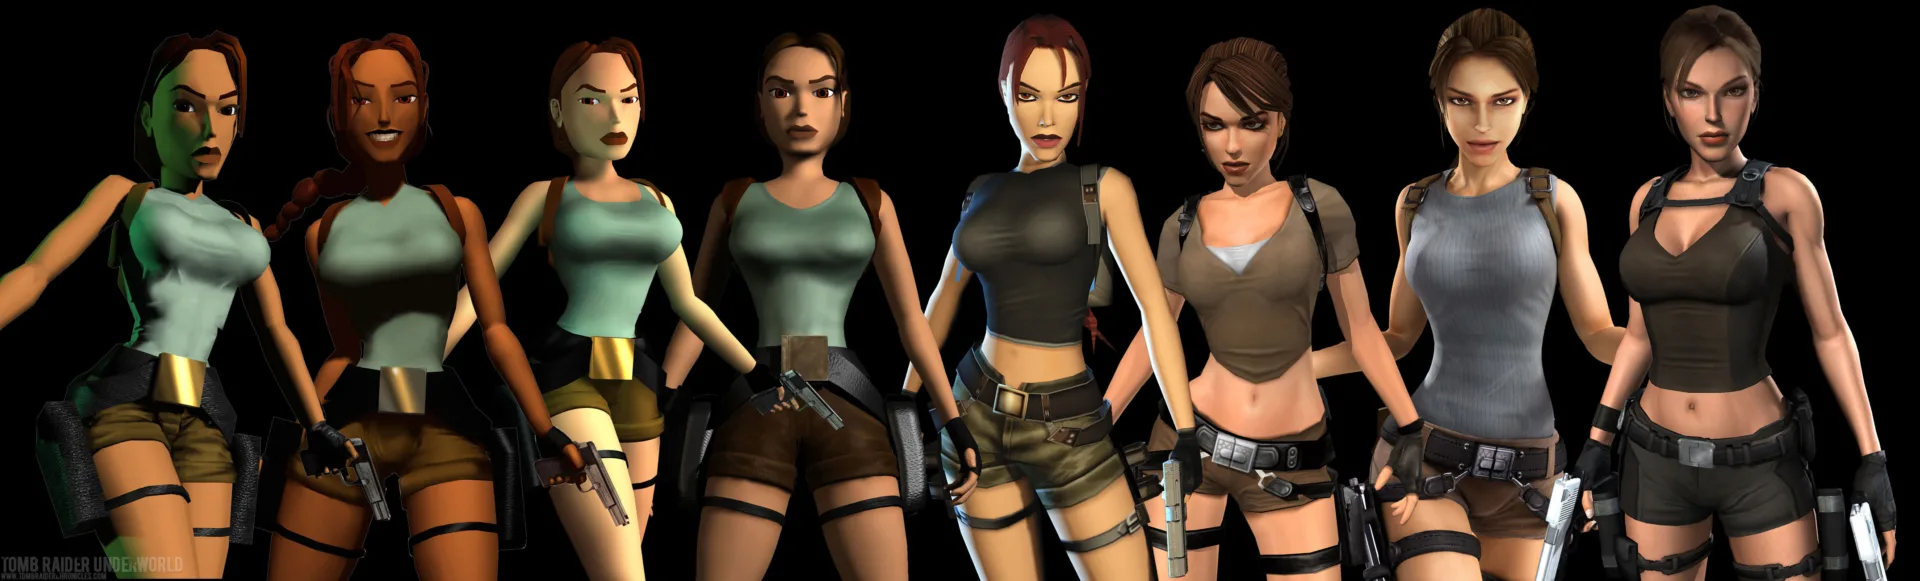 Lara Croft - Evolução da personagem nos games